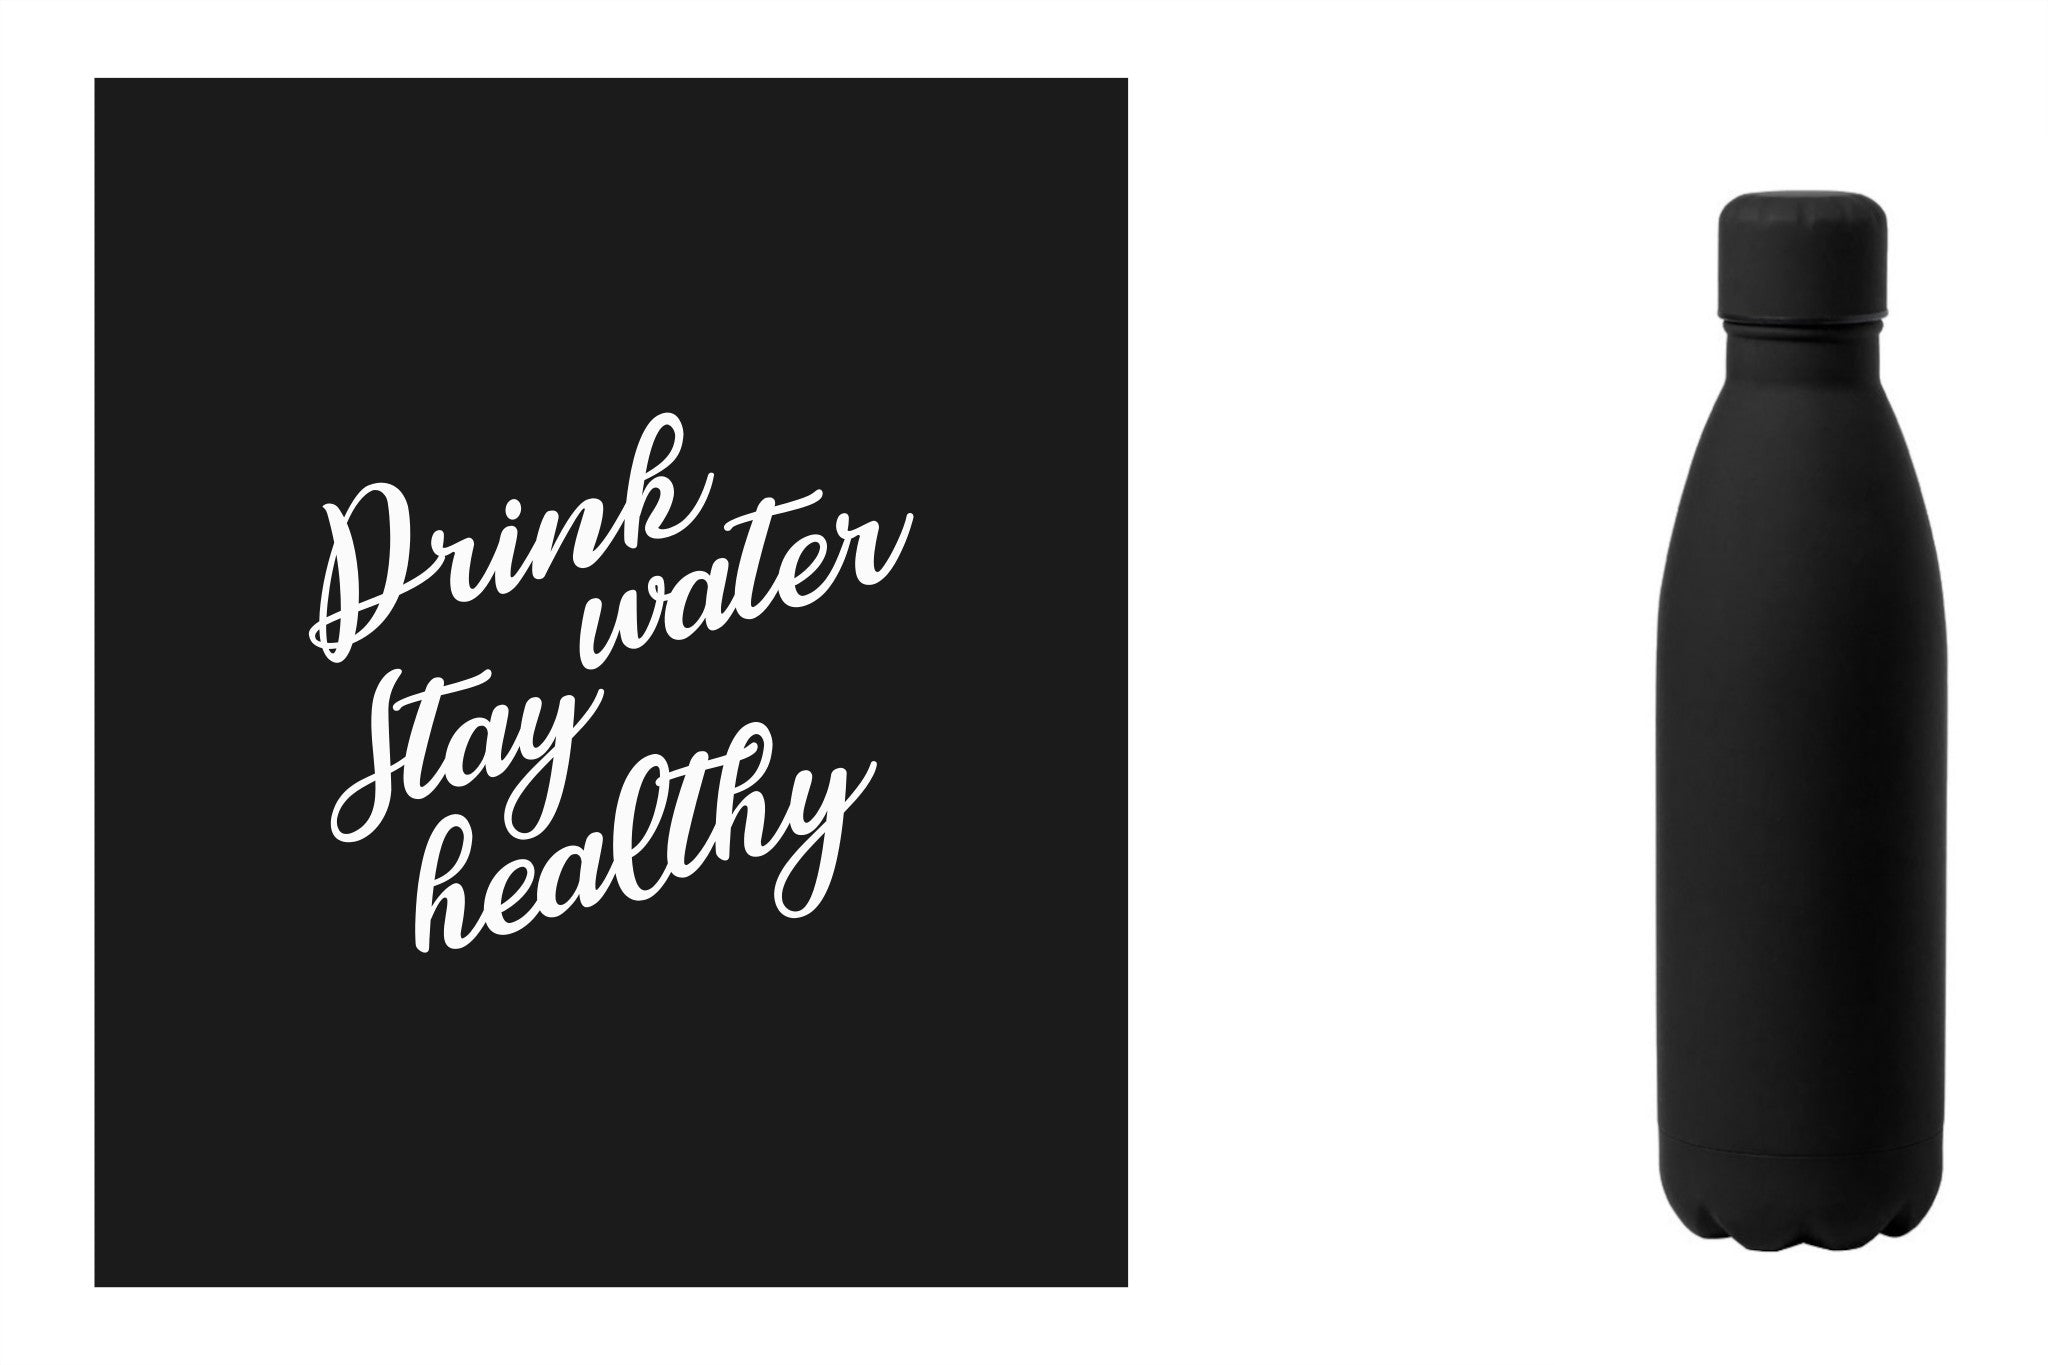 Metalen drinkfles, onbreekbare waterfles, aluminium drinkfles, hydratatiefles, fles van RVS, roesvrijstalen watercontainer met water quote 'Drink water, stay healthy' kleur zwart.